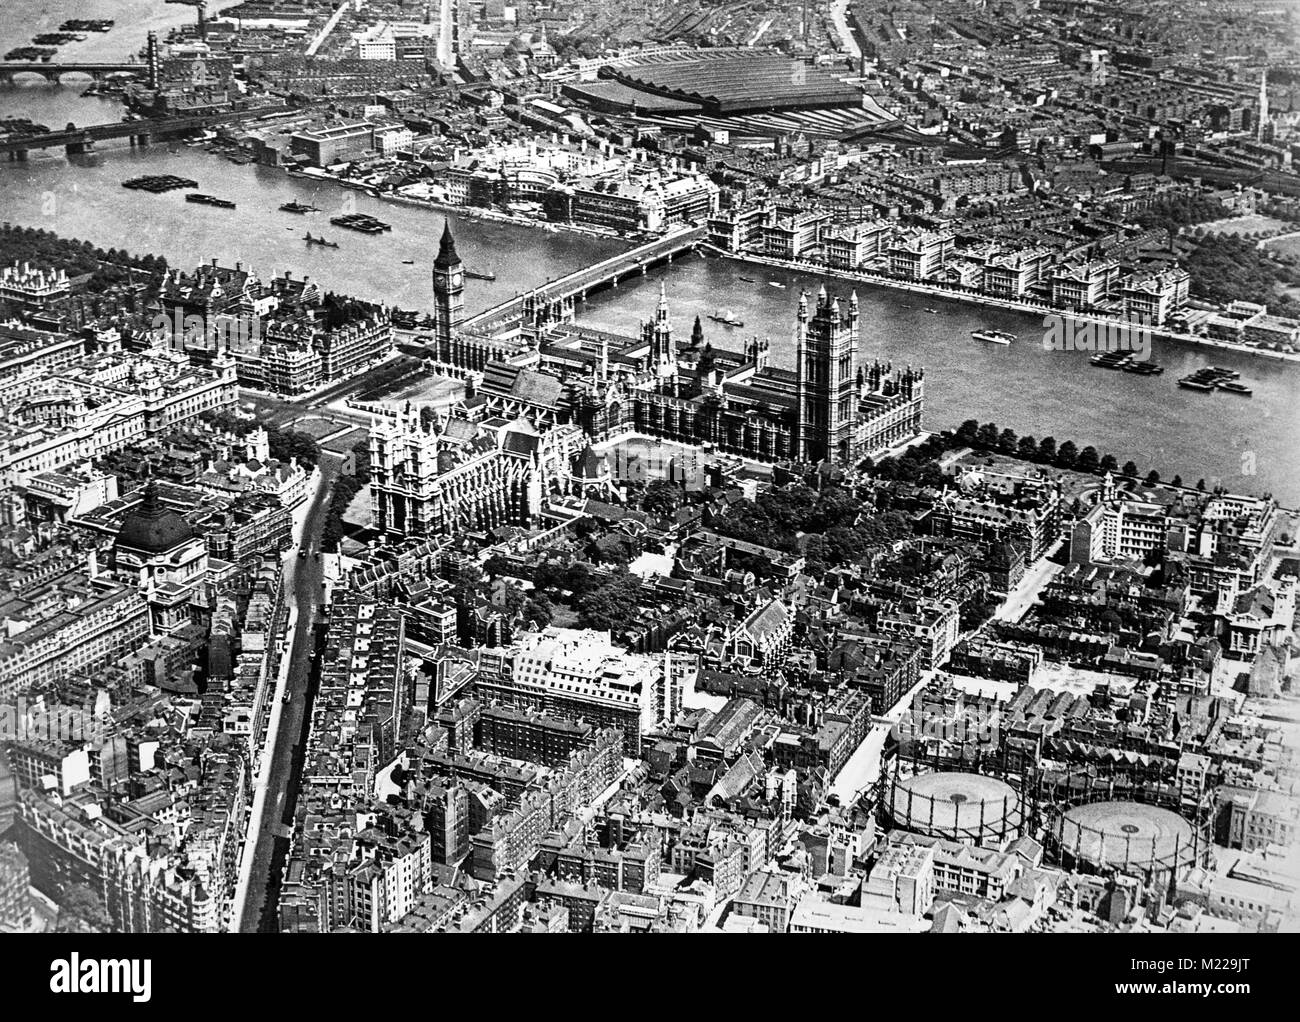 Vue aérienne des Chambres du Parlement, la Tamise, et Waterloo Bridge à Londres, en Angleterre, depuis les années 1920. Banque D'Images